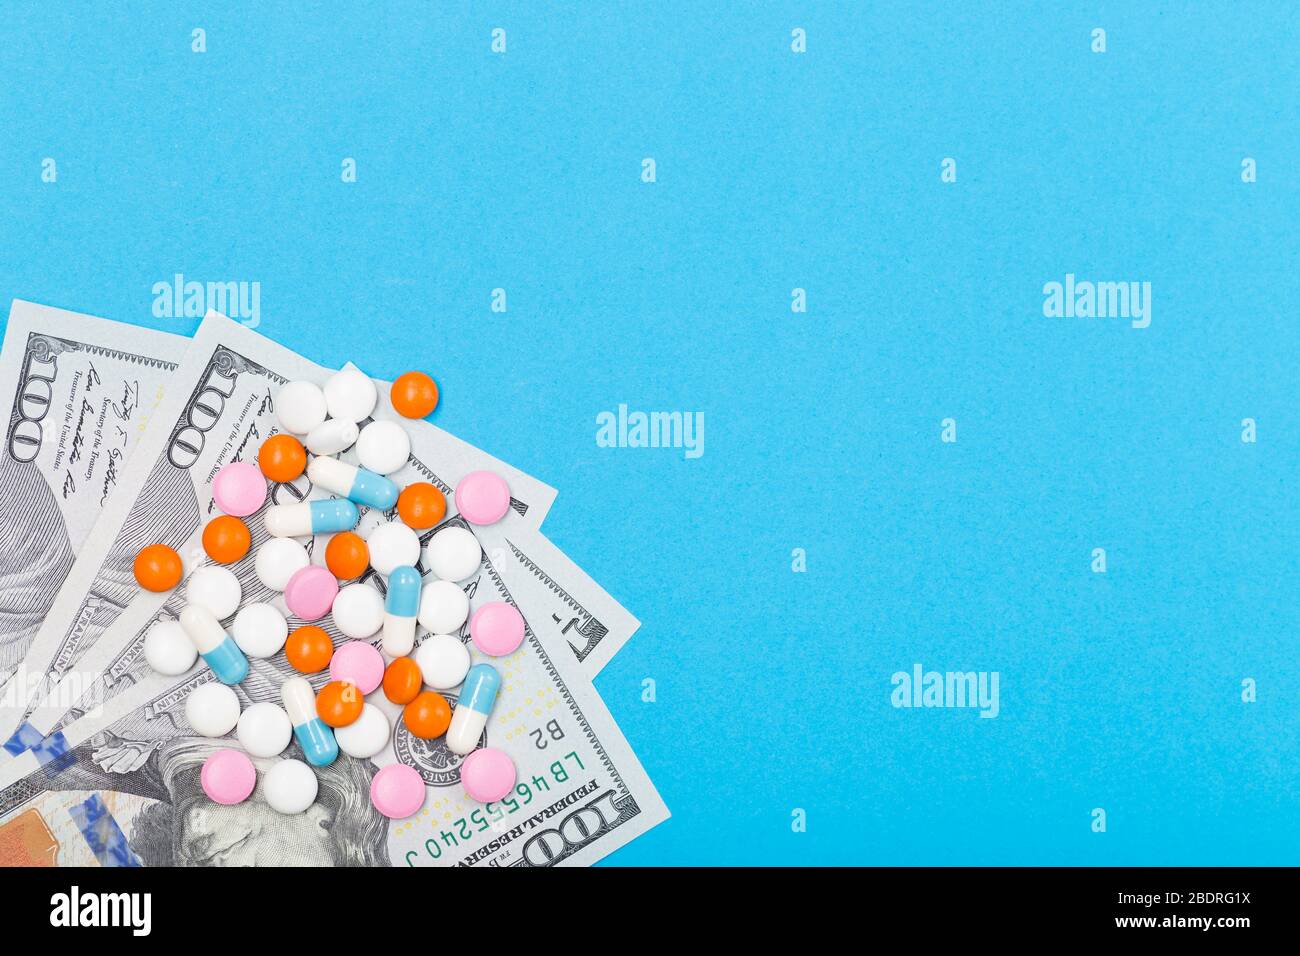 Médicaments pilules, comprimés et capsules sur fond de dollars des États-Unis. Espace libre. Concept de santé Banque D'Images